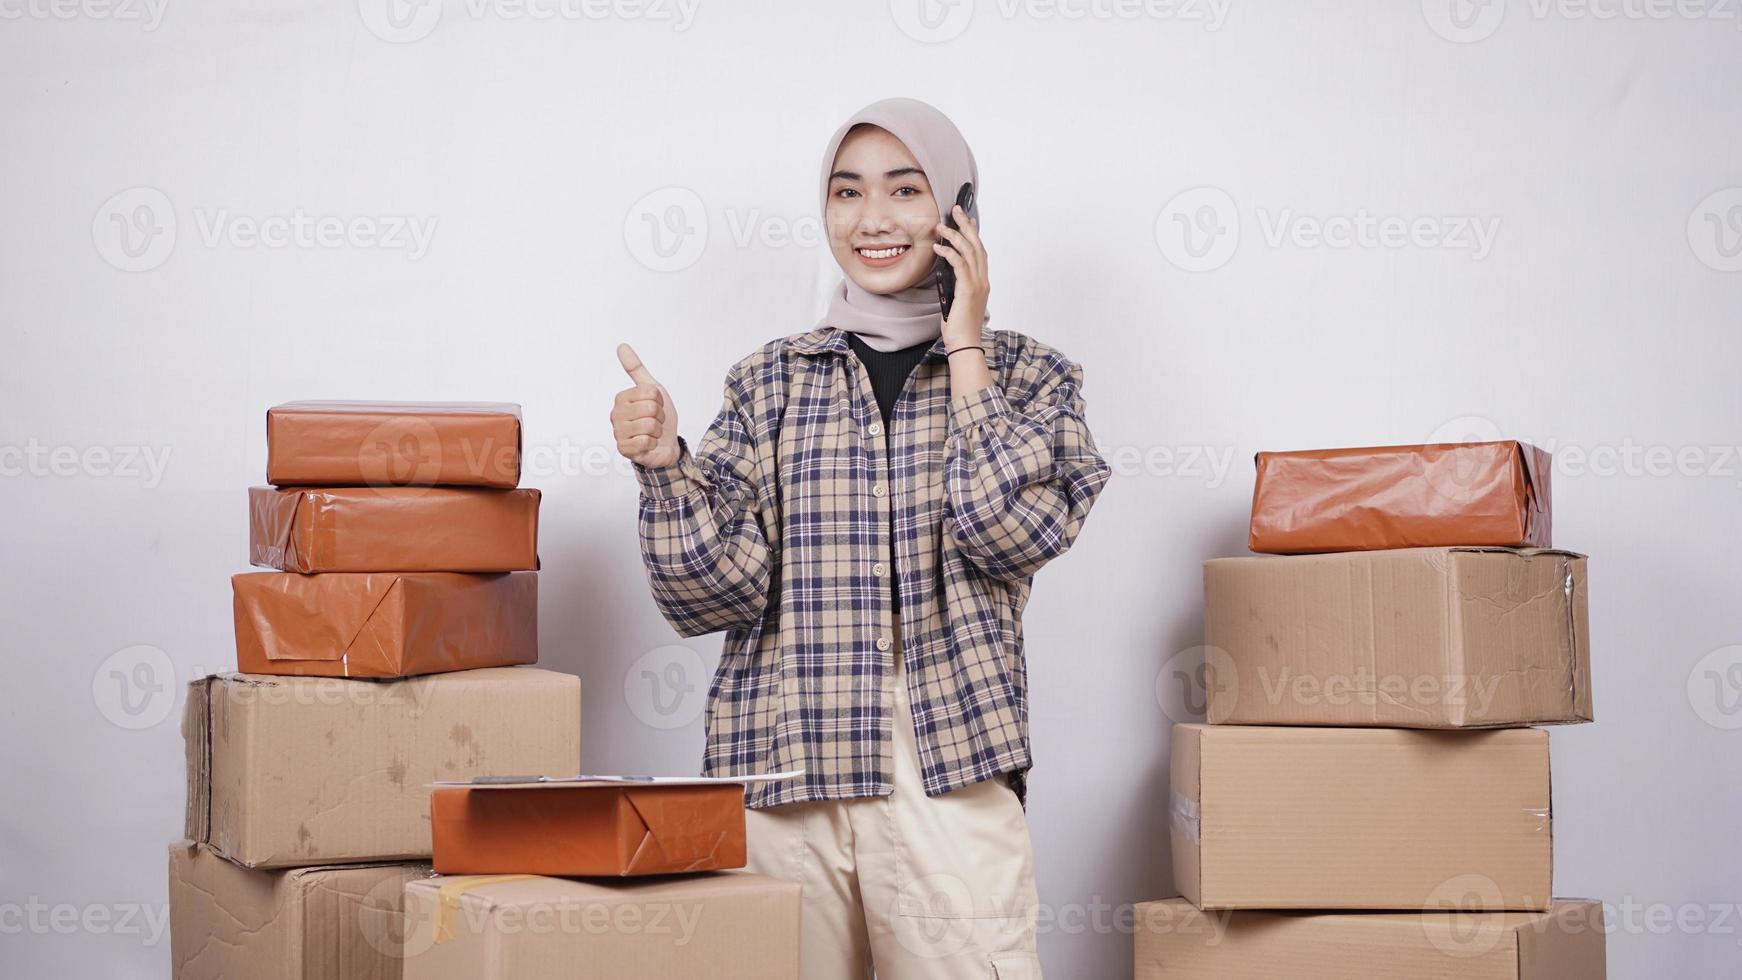 empresária asiática no telefone gesticulando bem isolado no fundo branco foto